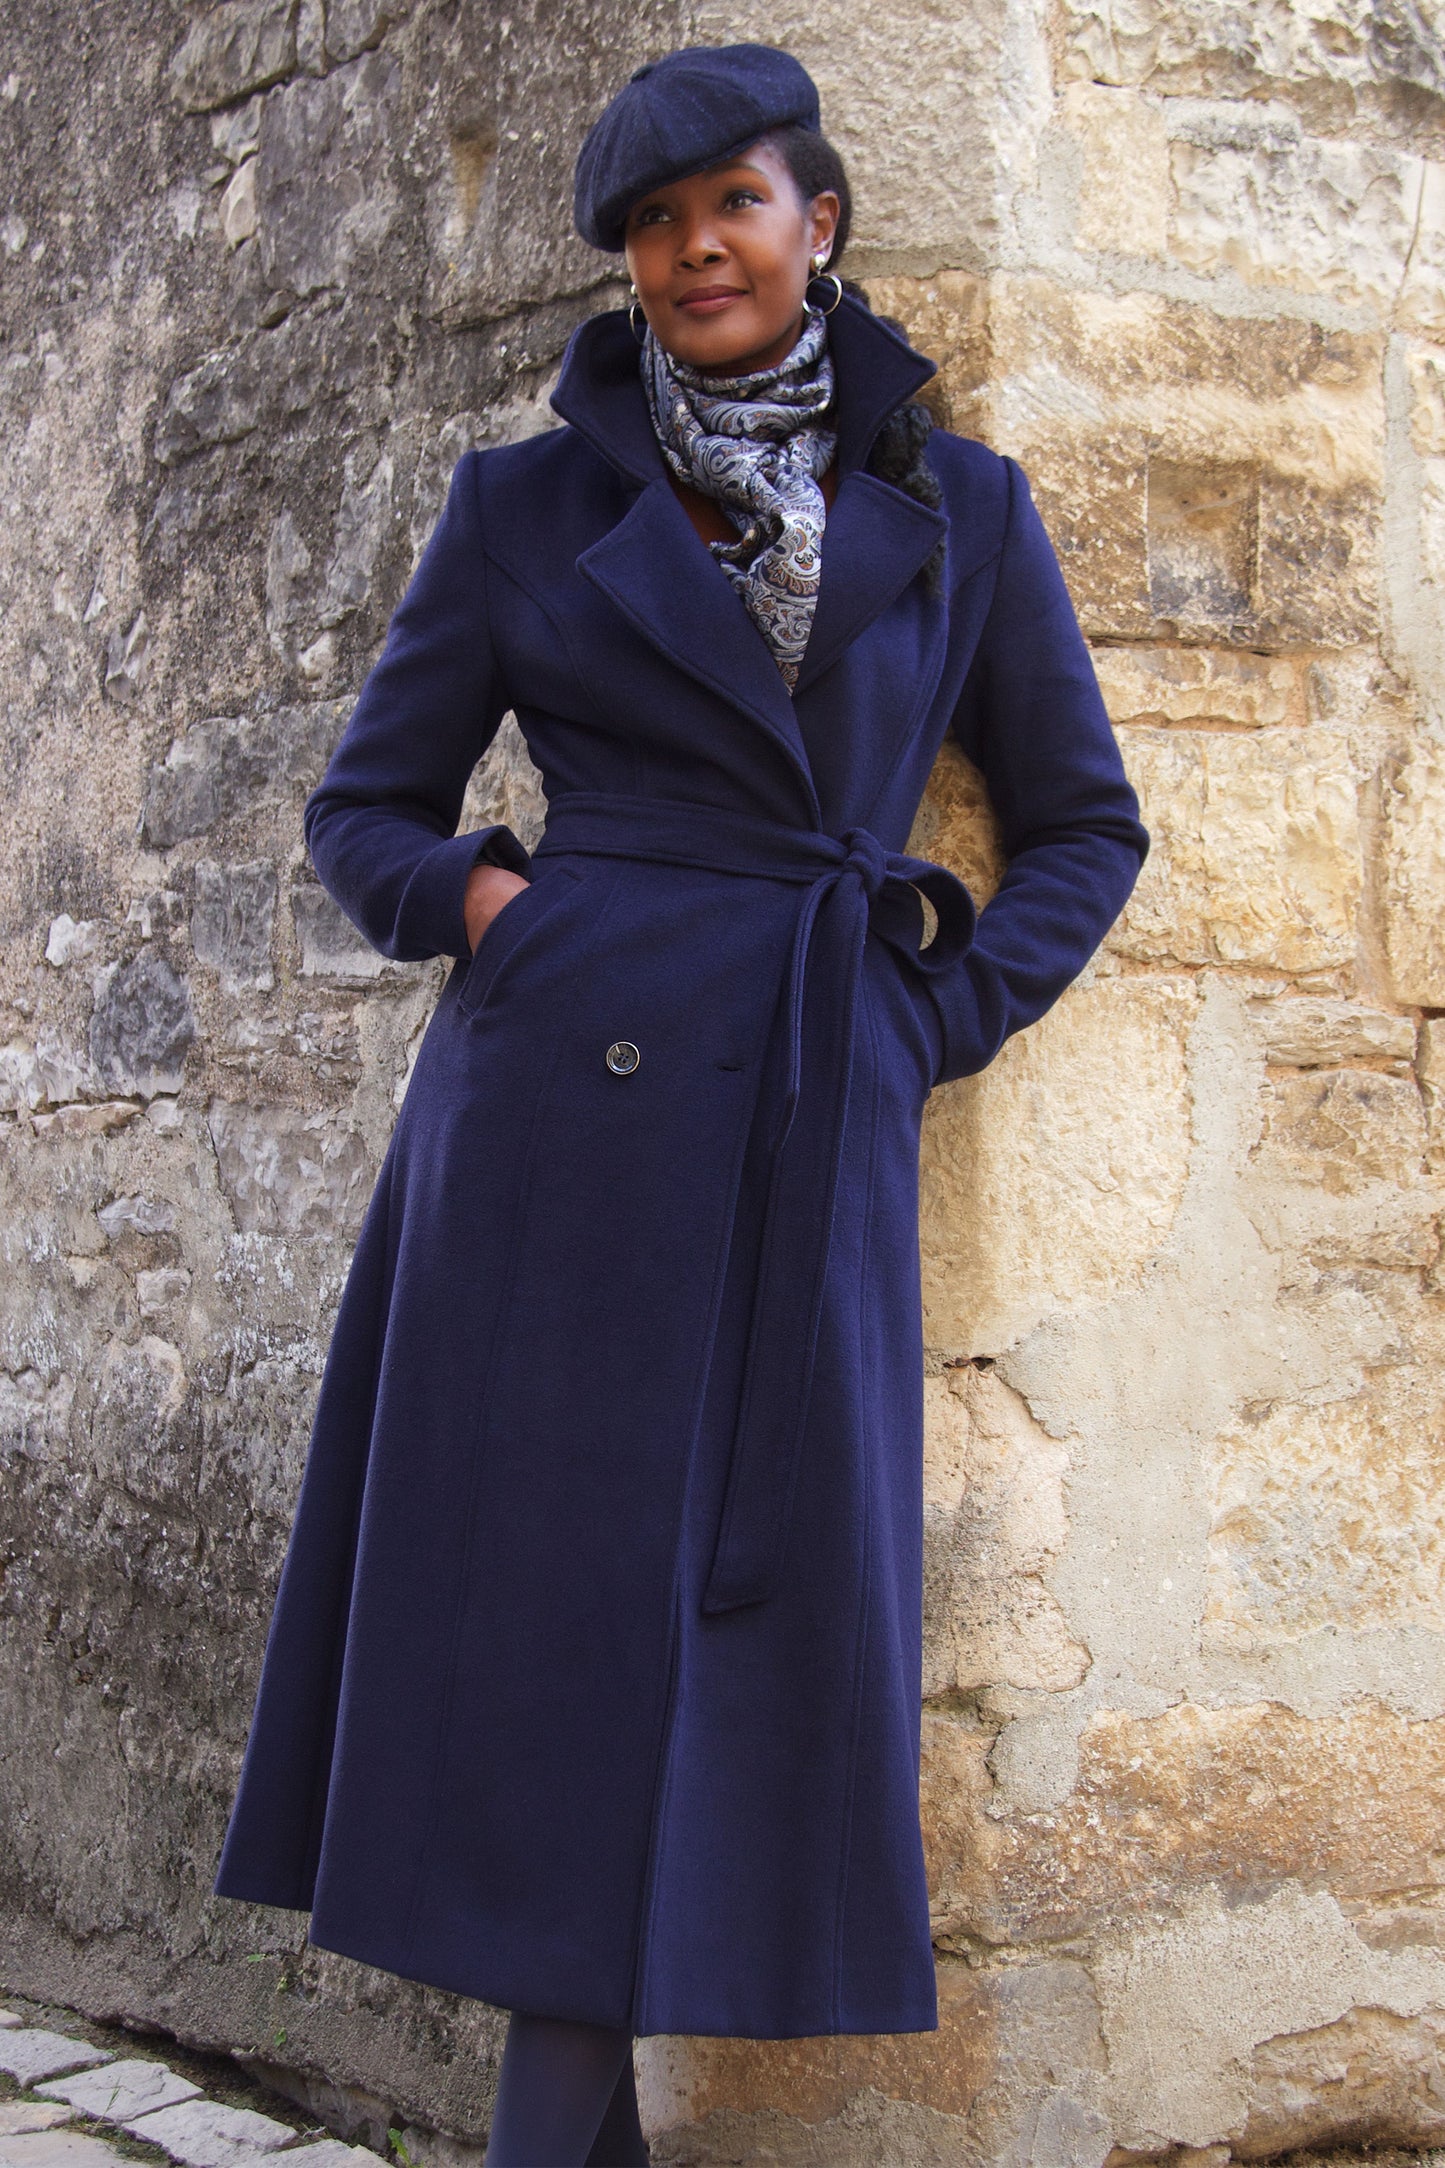 Dark Blue Belted Wool Coat 4065